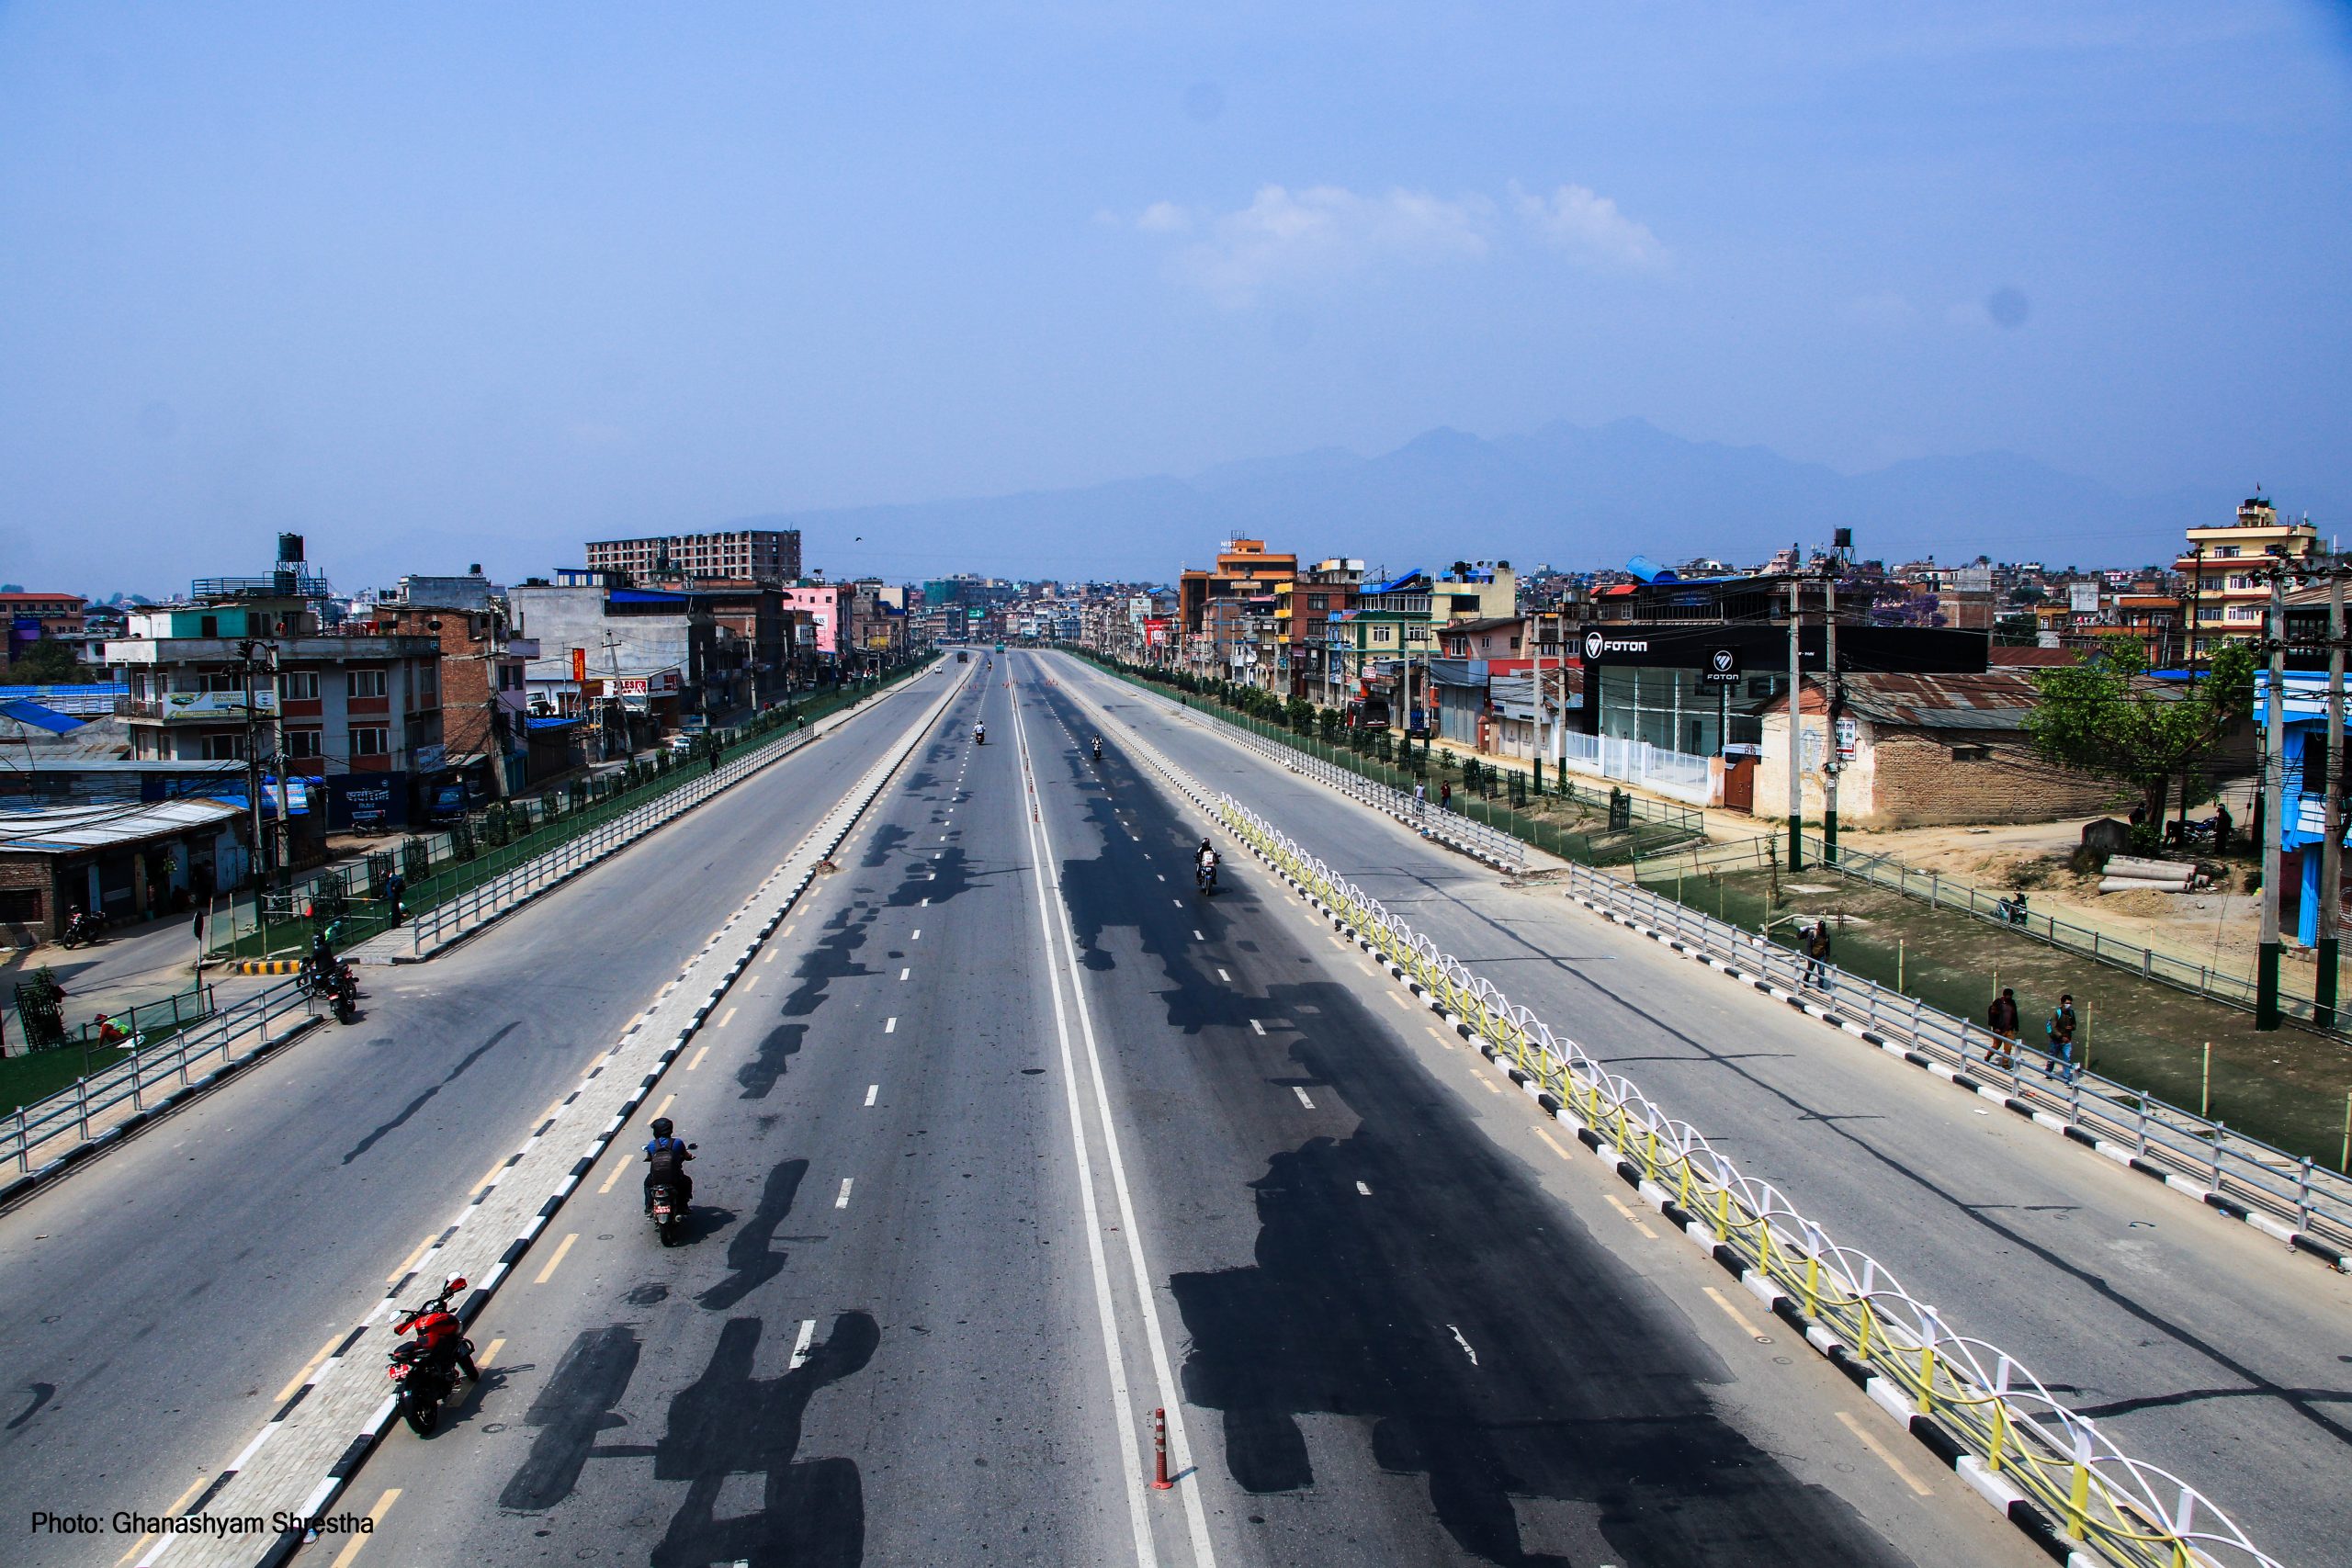 बडादसैँमा काठमाडौंको सडक सुनसान, करिब २० लाख मानिस राजधानीबाट बाहिर गएको अनुमान